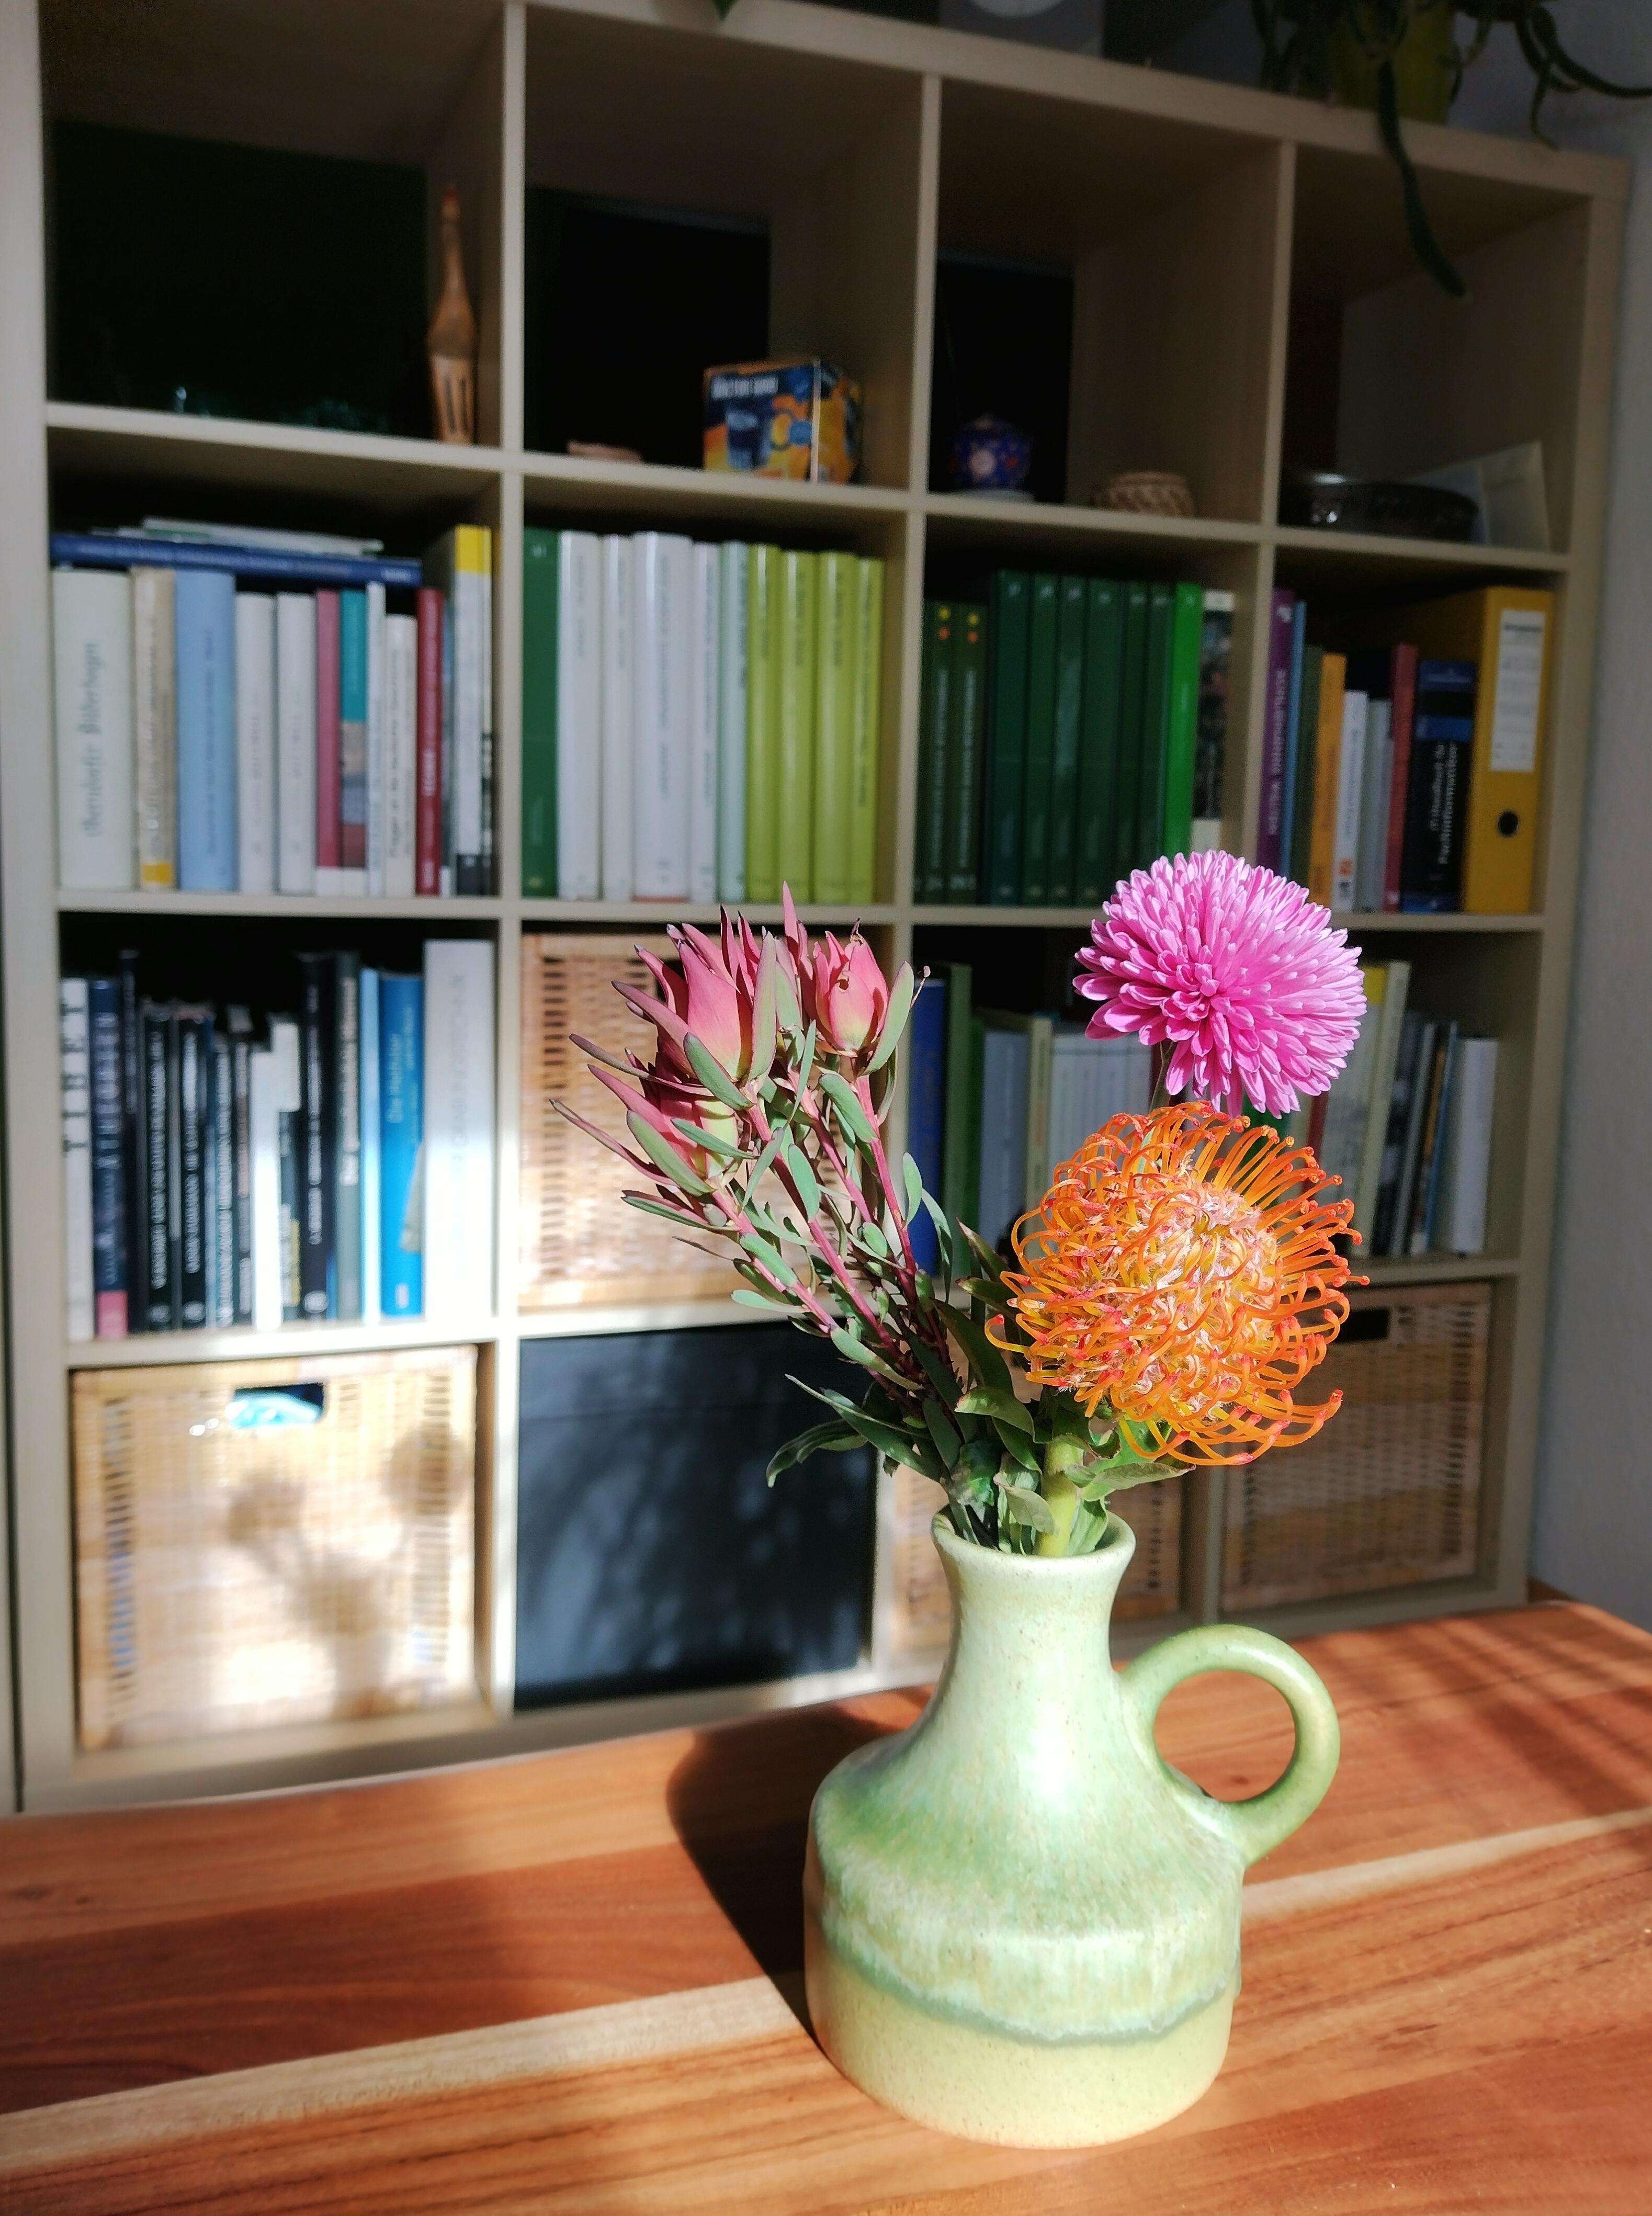 Diese drei hübsche Geburtstagsblümschen habe ich immernoch 🥰
#frischeblumen #schnittblumen #blumenliebe #farbenfroh #keramikvase #vintagevase